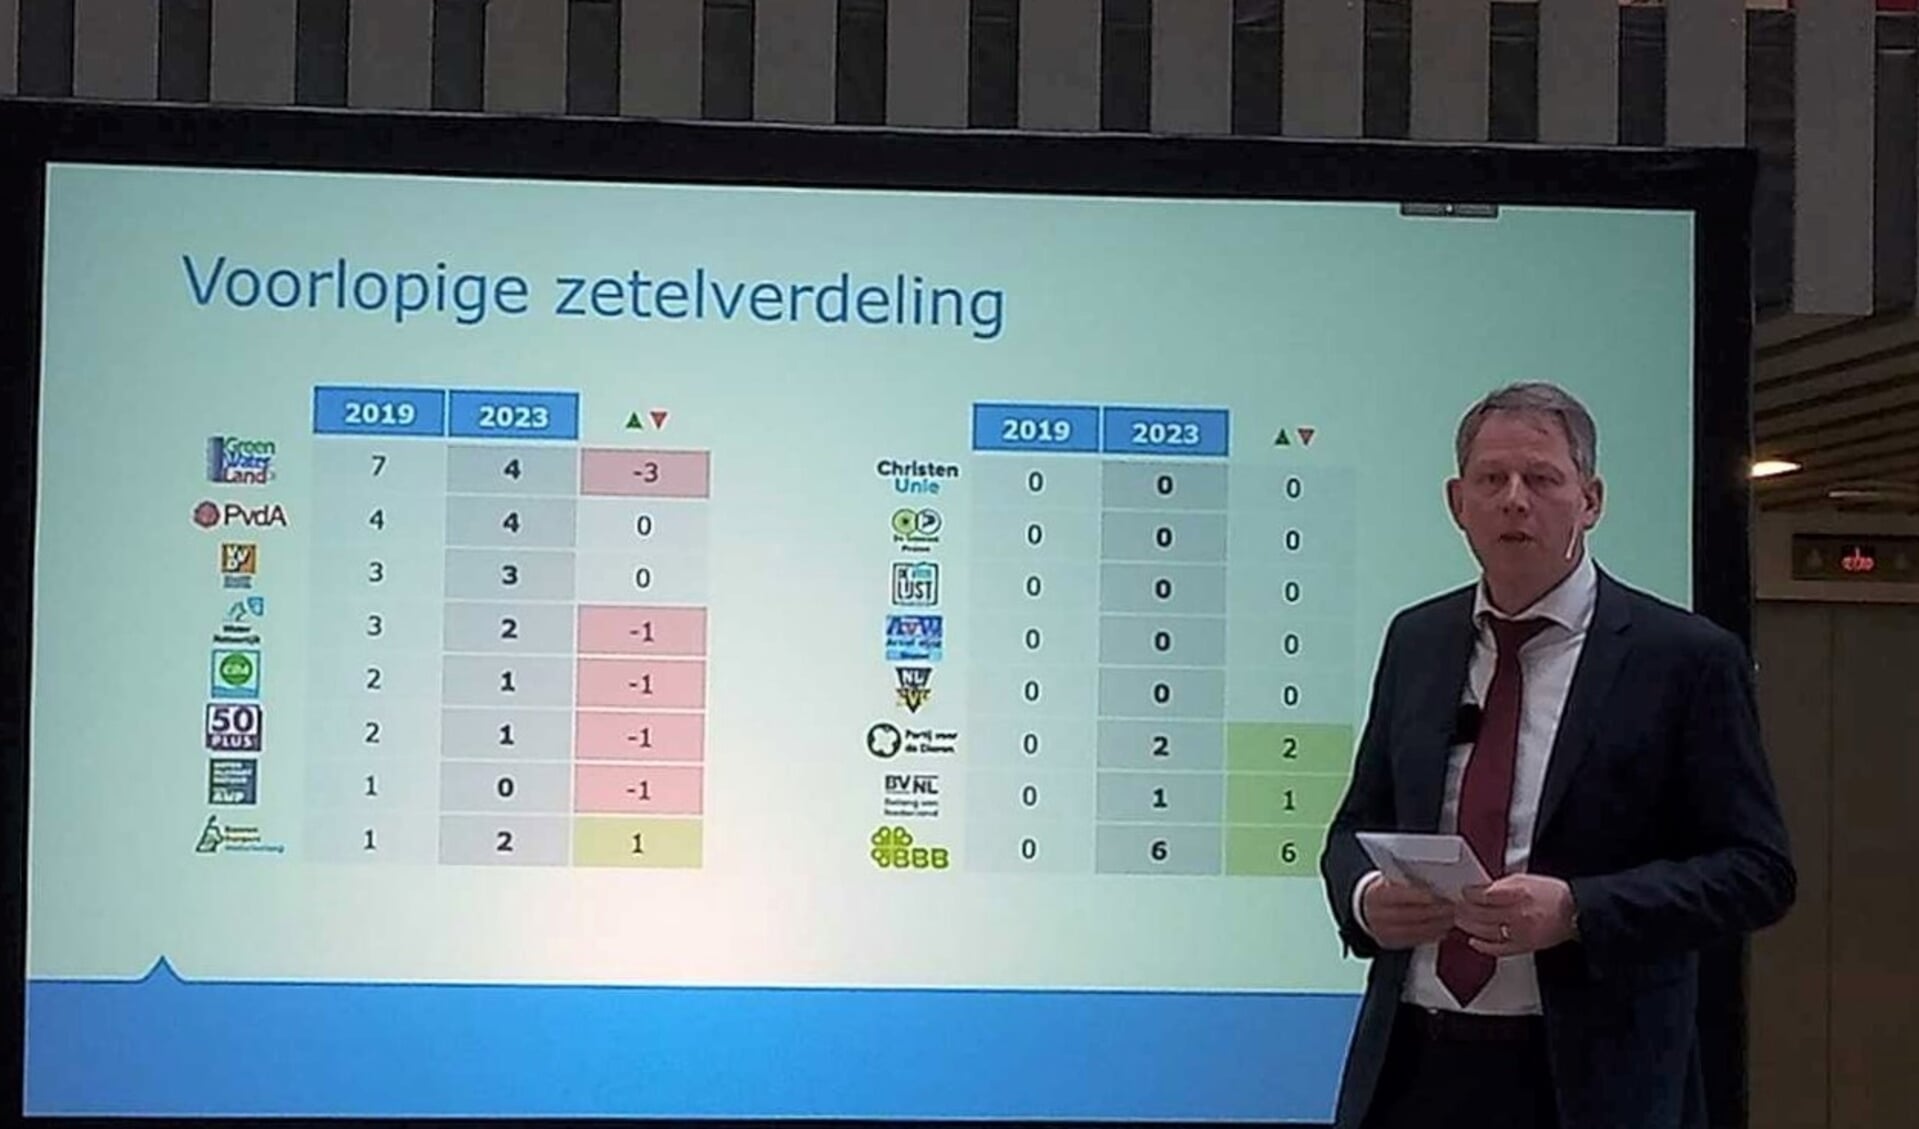 Presentatie van de voorlopige zetelverdeling voor Hoogheemraadschap Hollands Noorderkwartier vanmorgen.